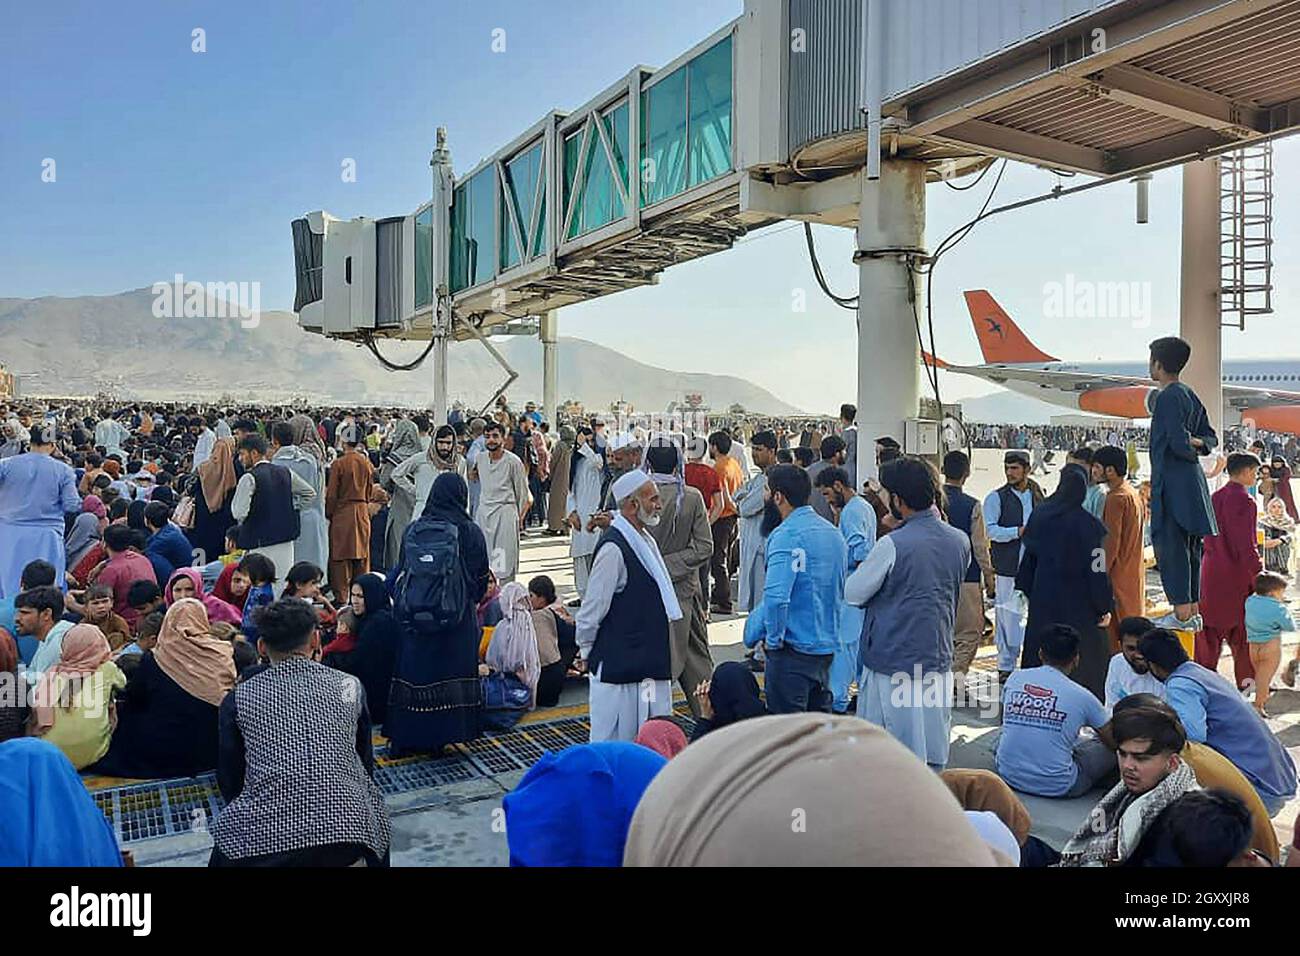 Afghanen drängen sich am 16. August 2021 auf dem Asphalt des Flughafens von Kabul, um aus dem Land zu fliehen, während die Taliban Afghanistan unter Kontrolle hatten. Stockfoto